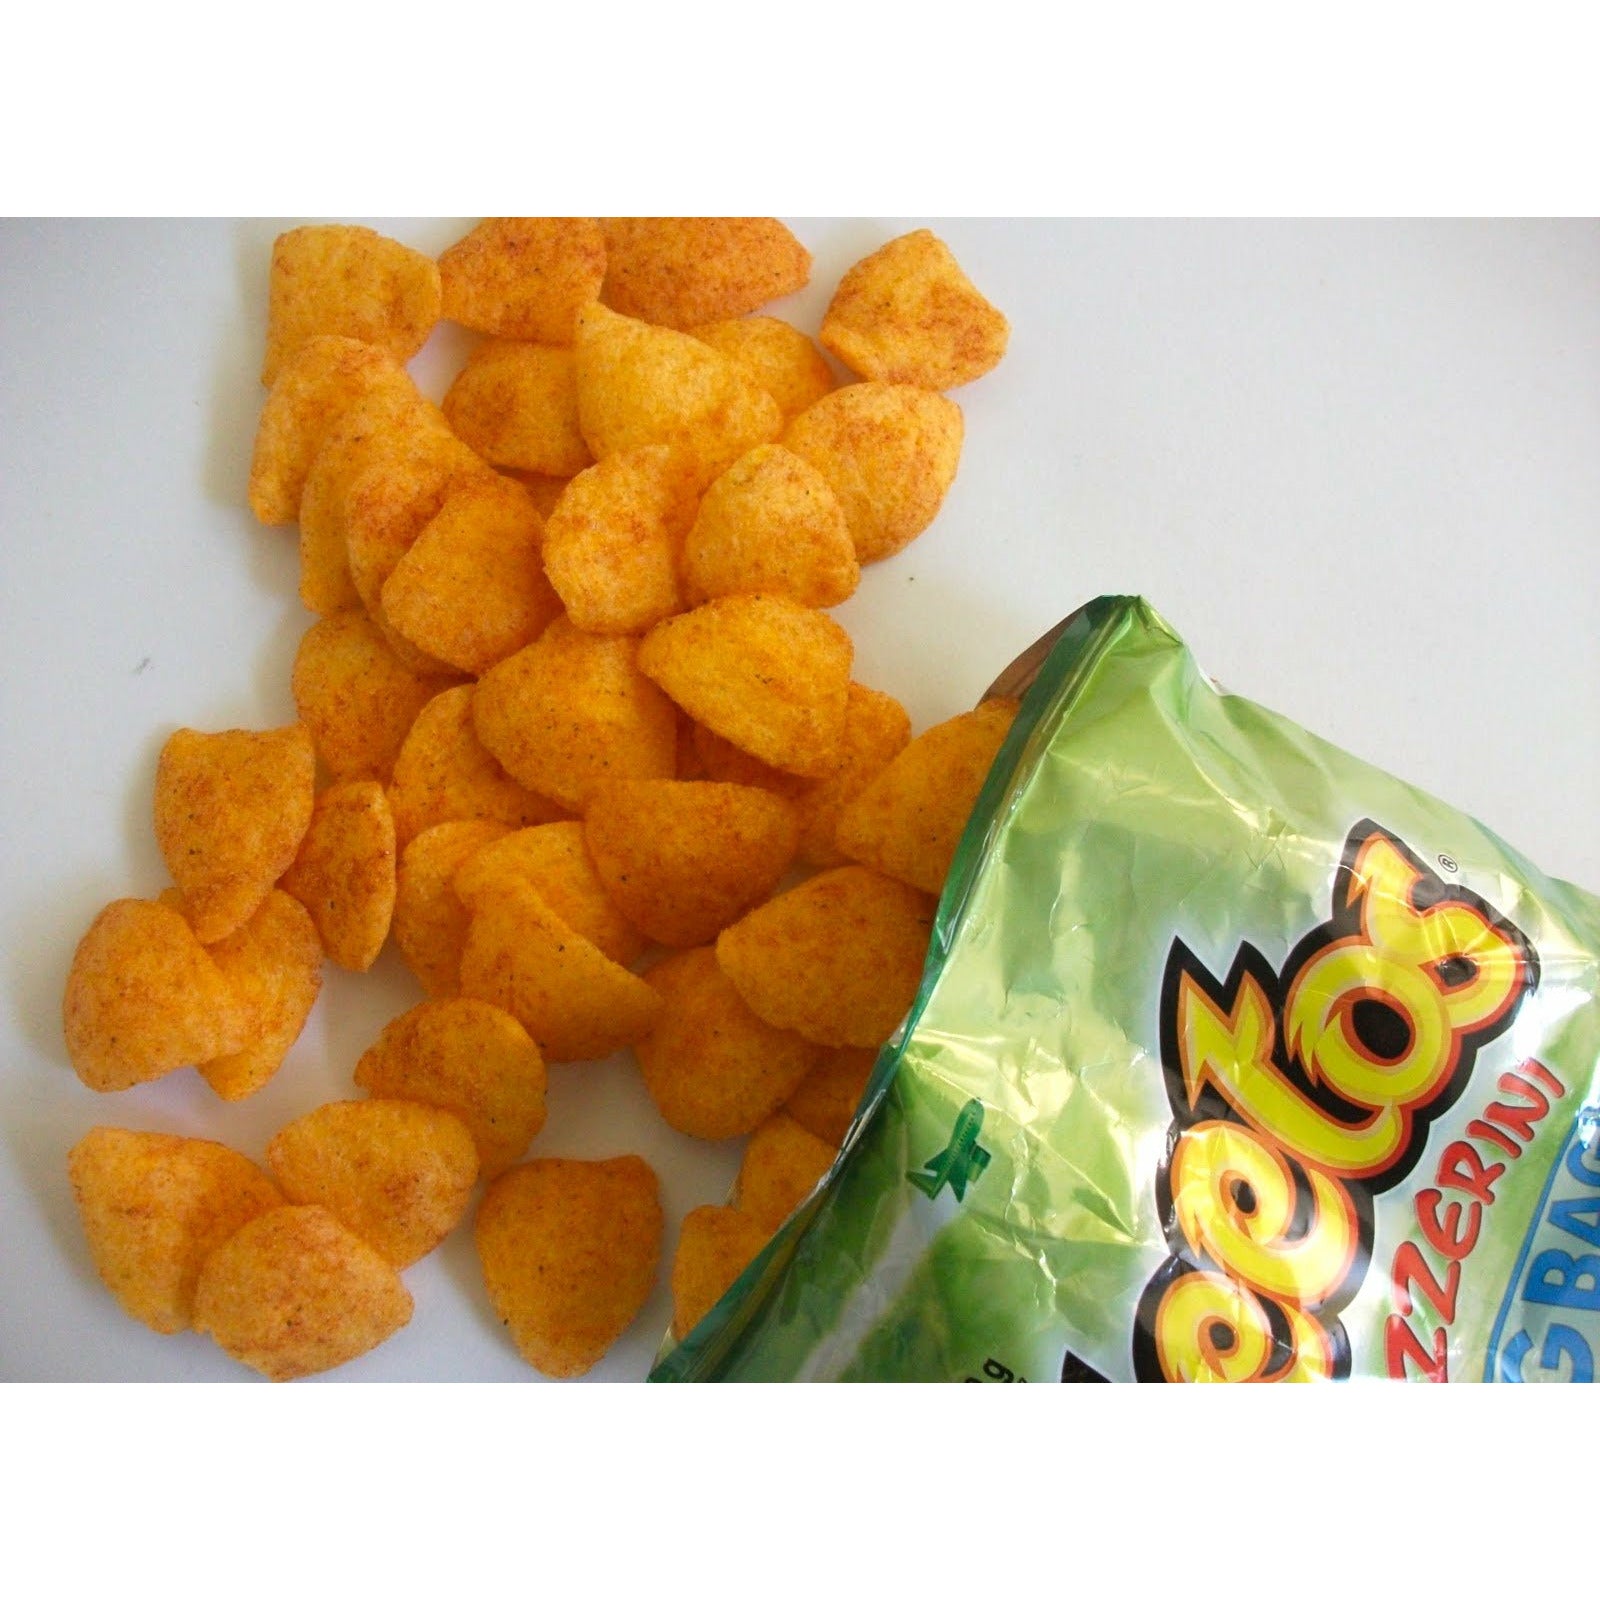 Un paquet vert ouverte et plein de chips oranges de forme triangulaire vus dans haut et sur une table blanche 